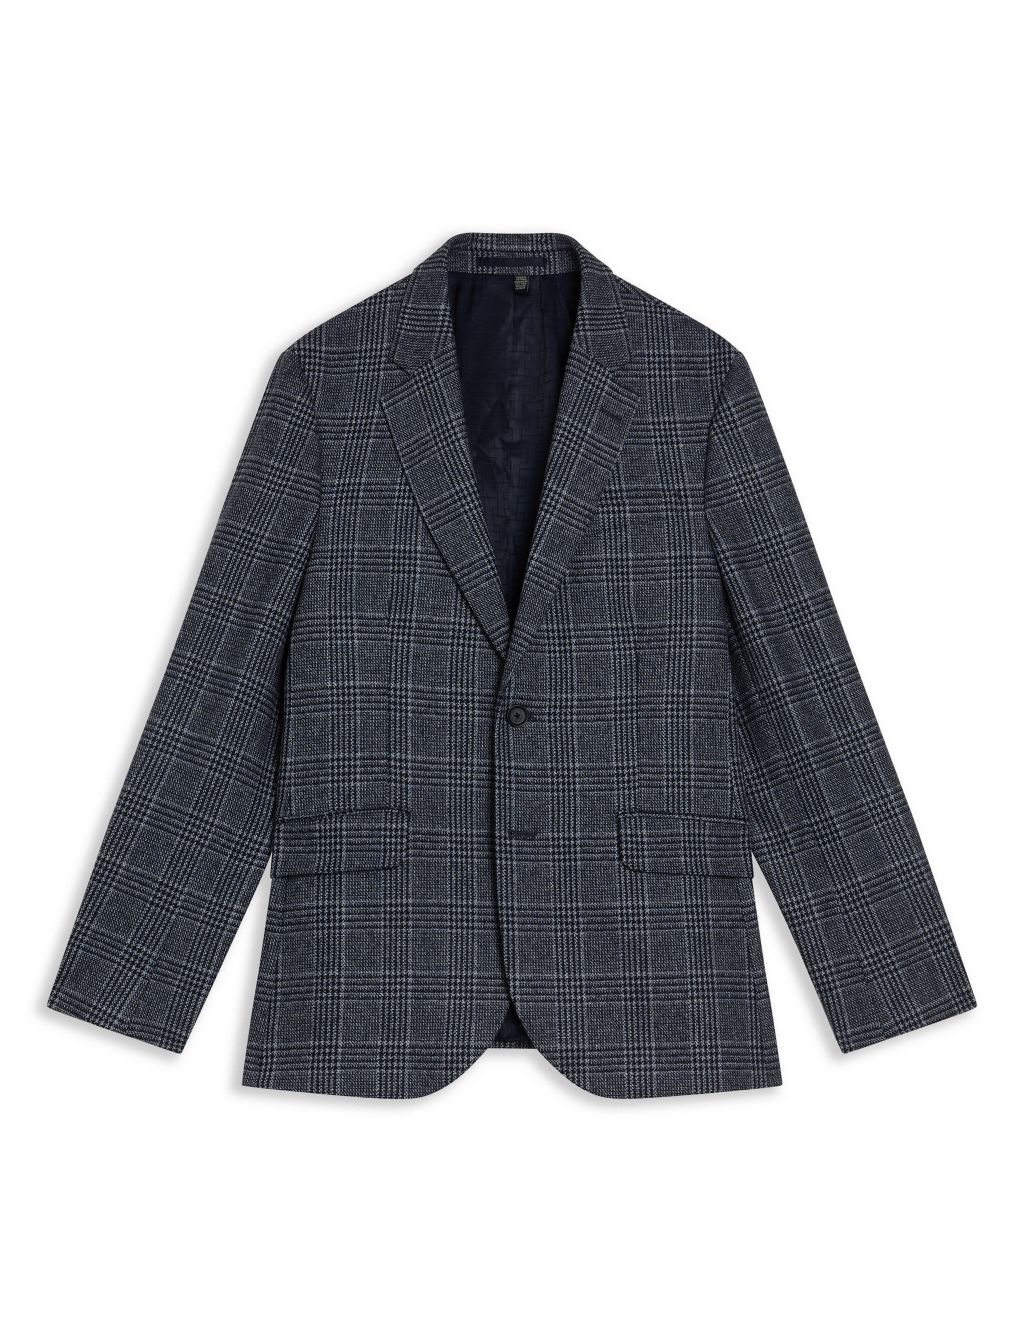 Regular Fit Wool Blend Check Suit Jacket image 2